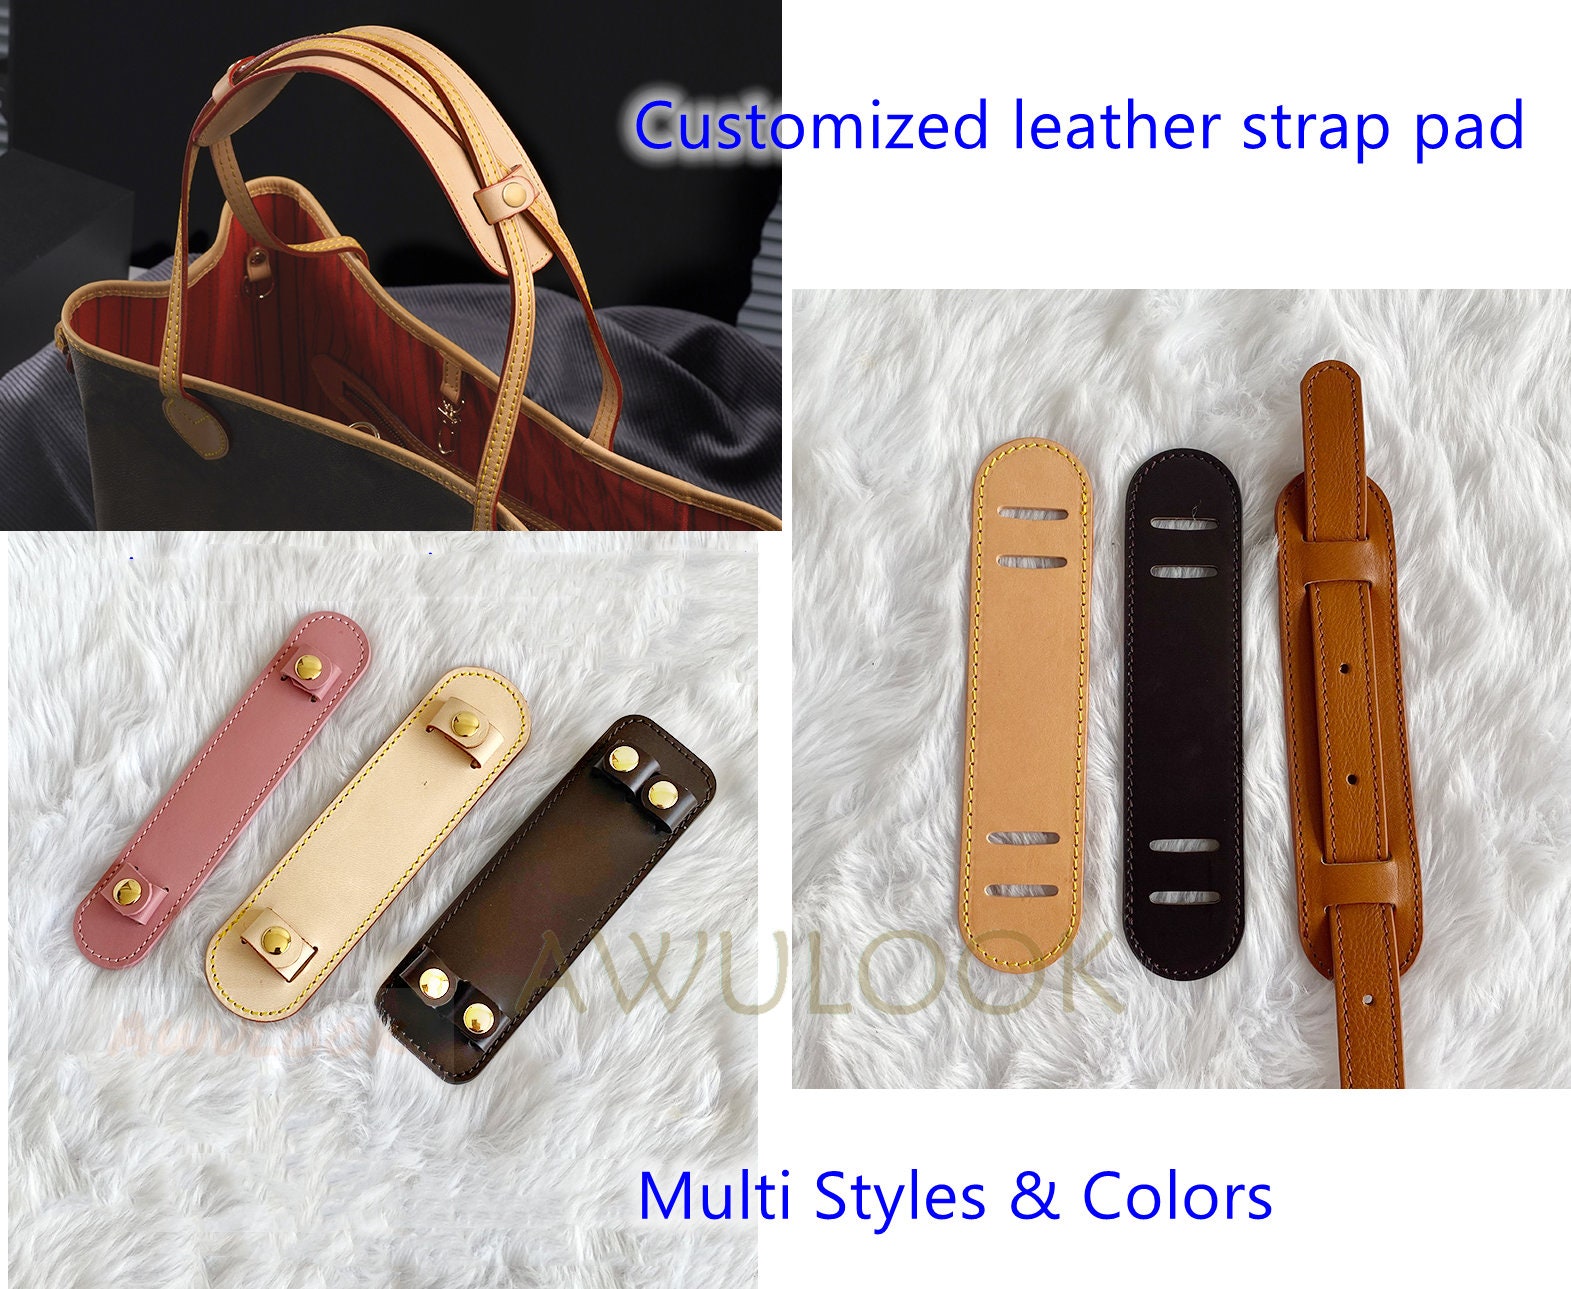 Vachetta Satchel Shoulder Bag Removable Leather Strap +Protector for LV  DIANE